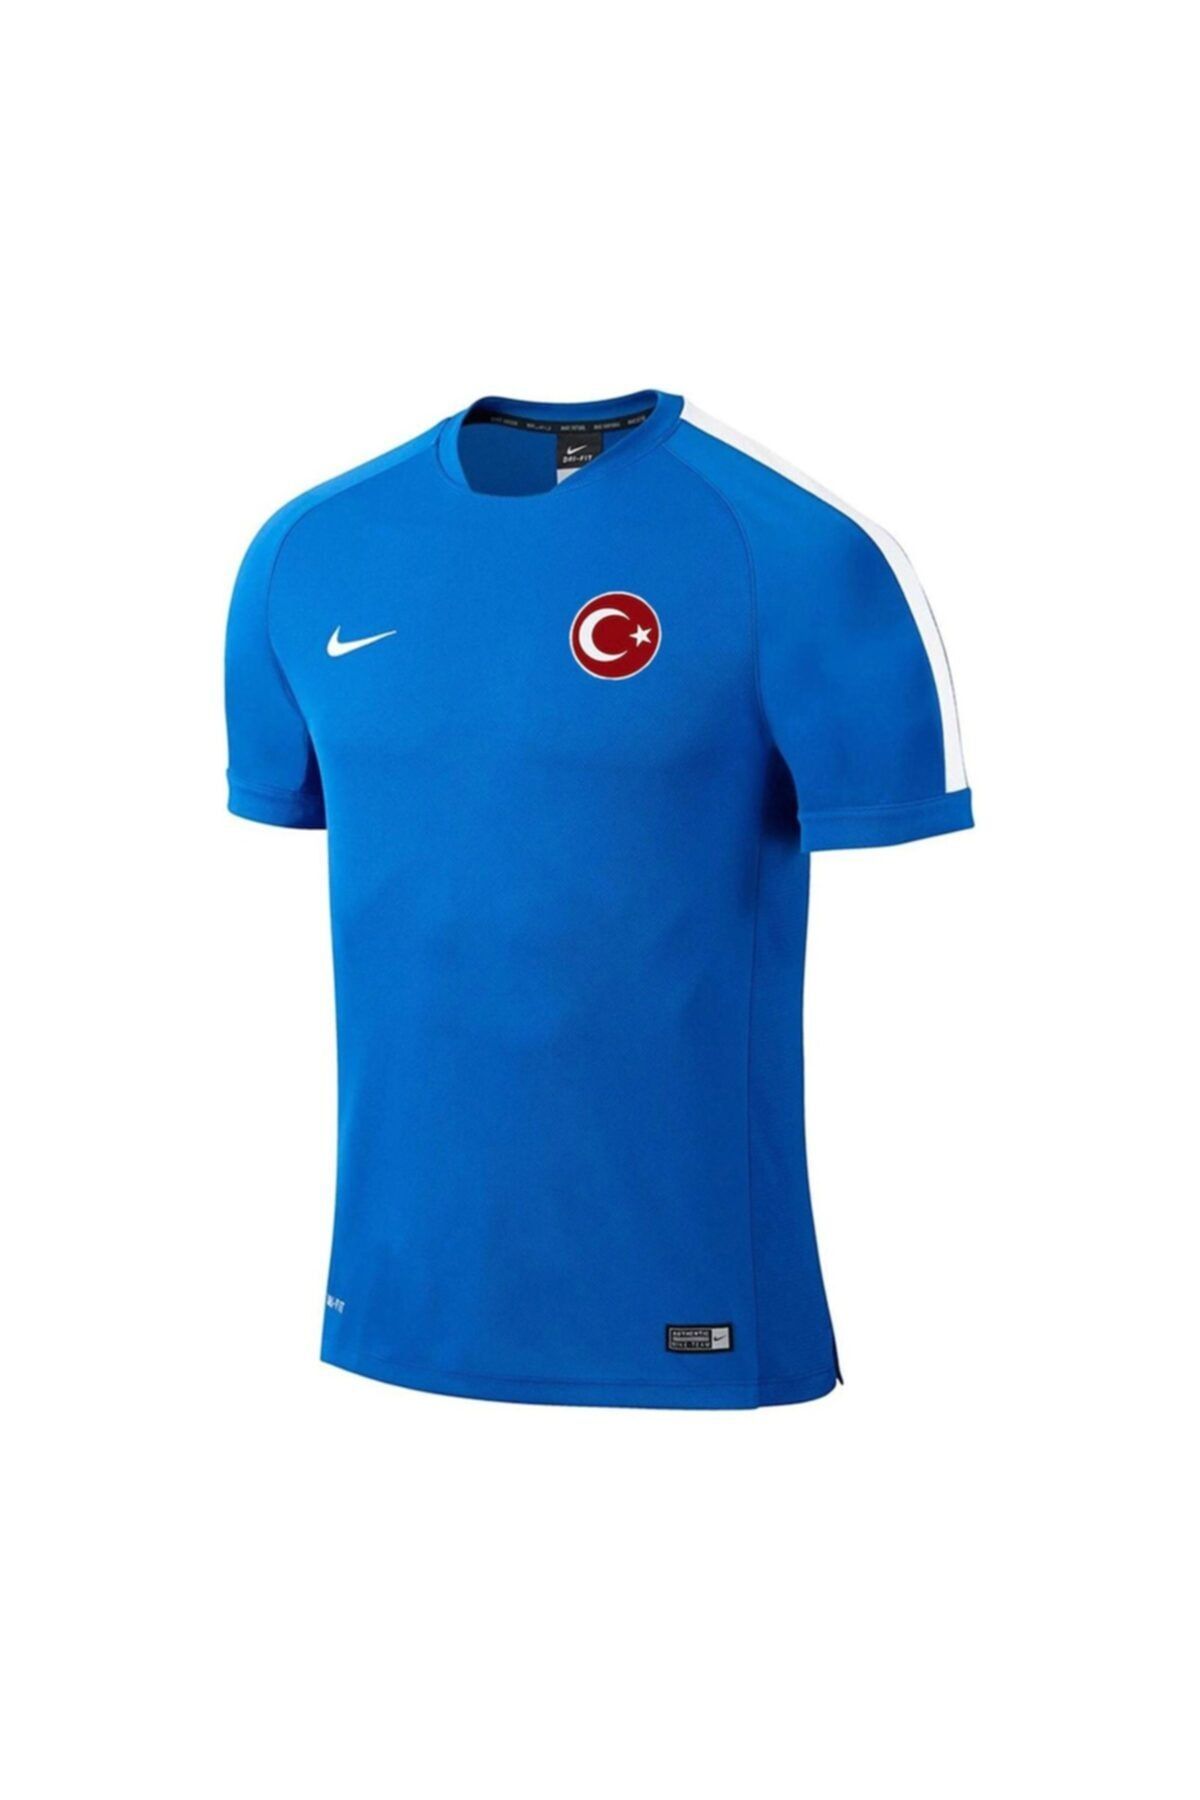 Nike Erkek Antrenman T-Shirt - Squad15 Flash Ss Trng Top - 644665-463